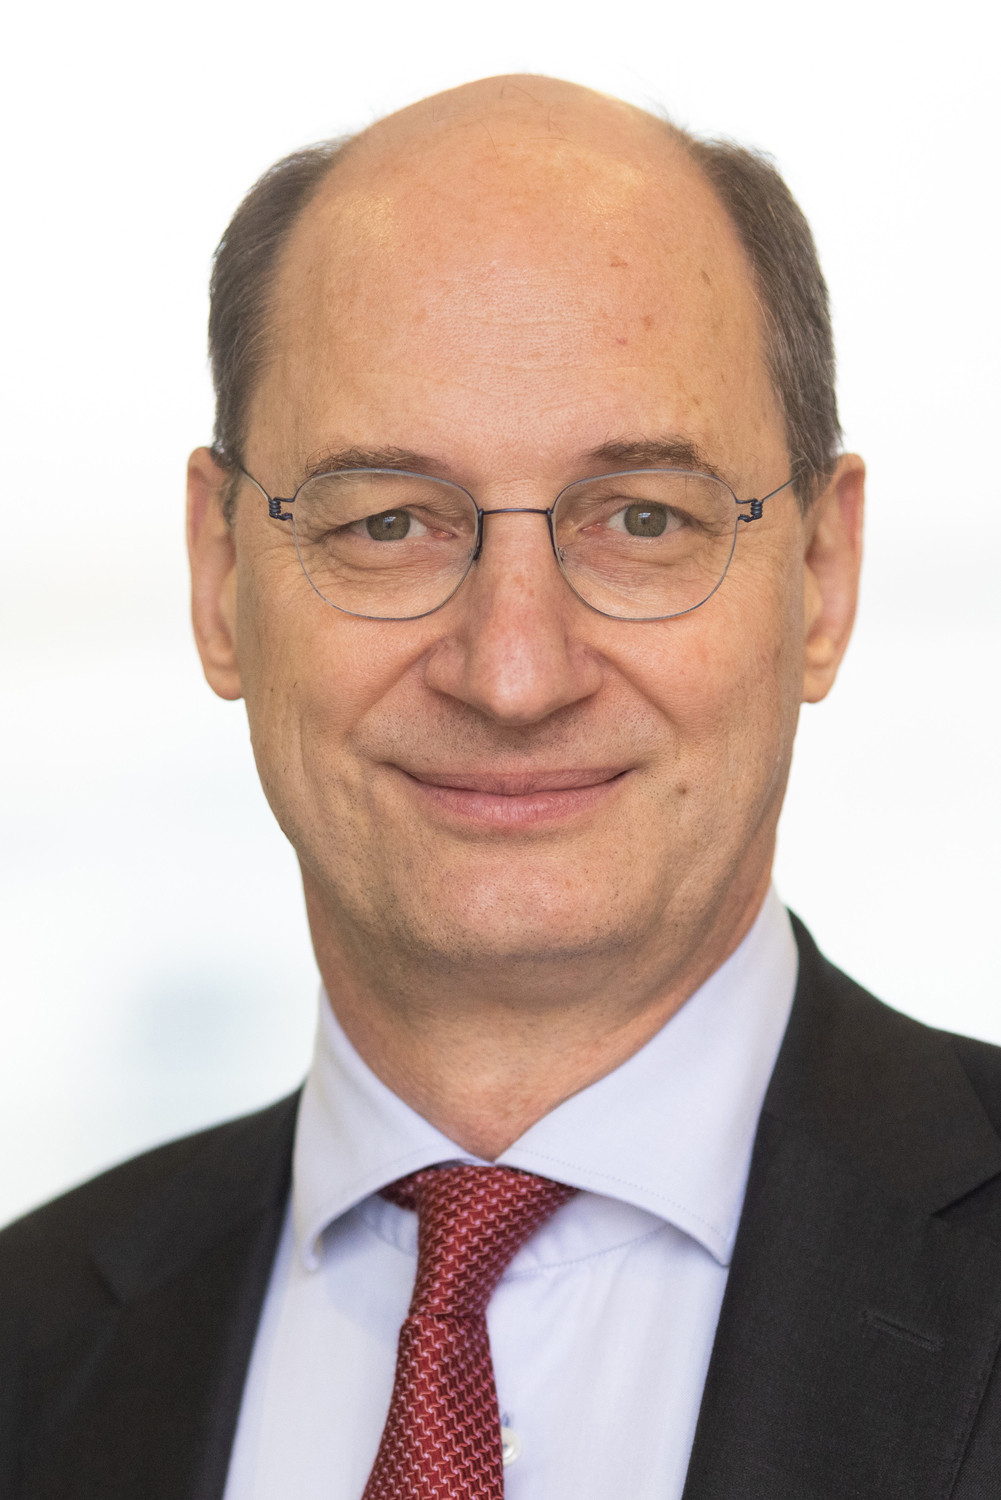 Prof. Dr. Ulf Wagner leitet den Bereich Rheumatologie am Universitätsklinikum Leipzig.